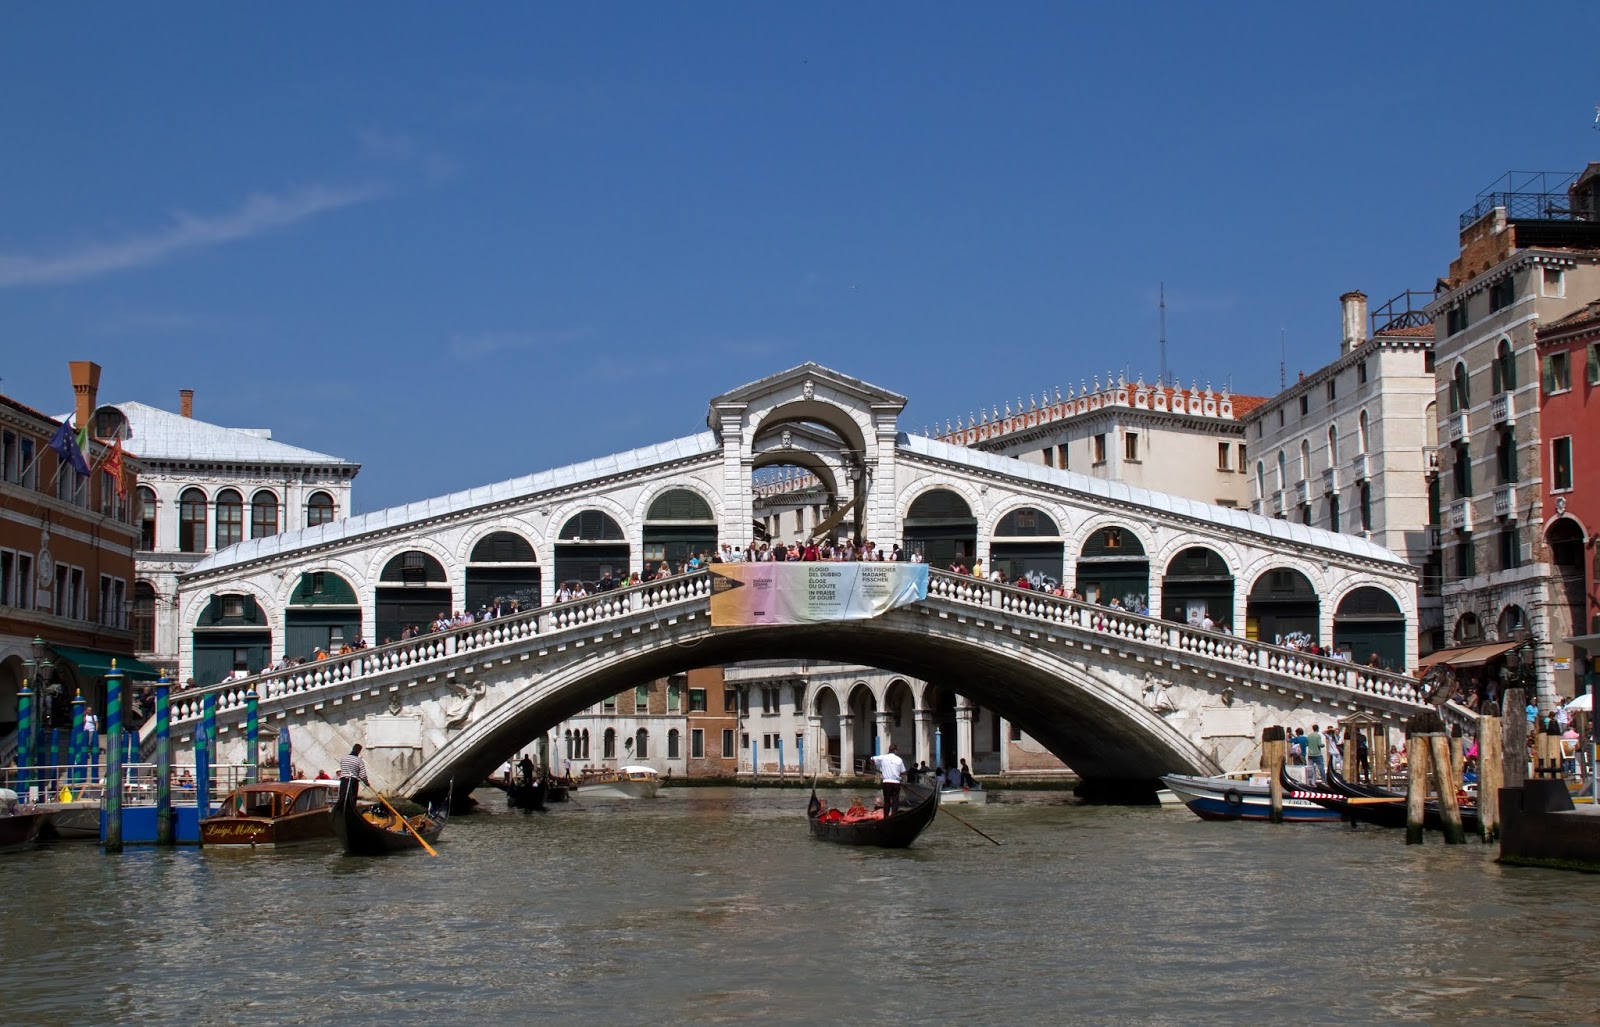 Фото мост риальто в венеции